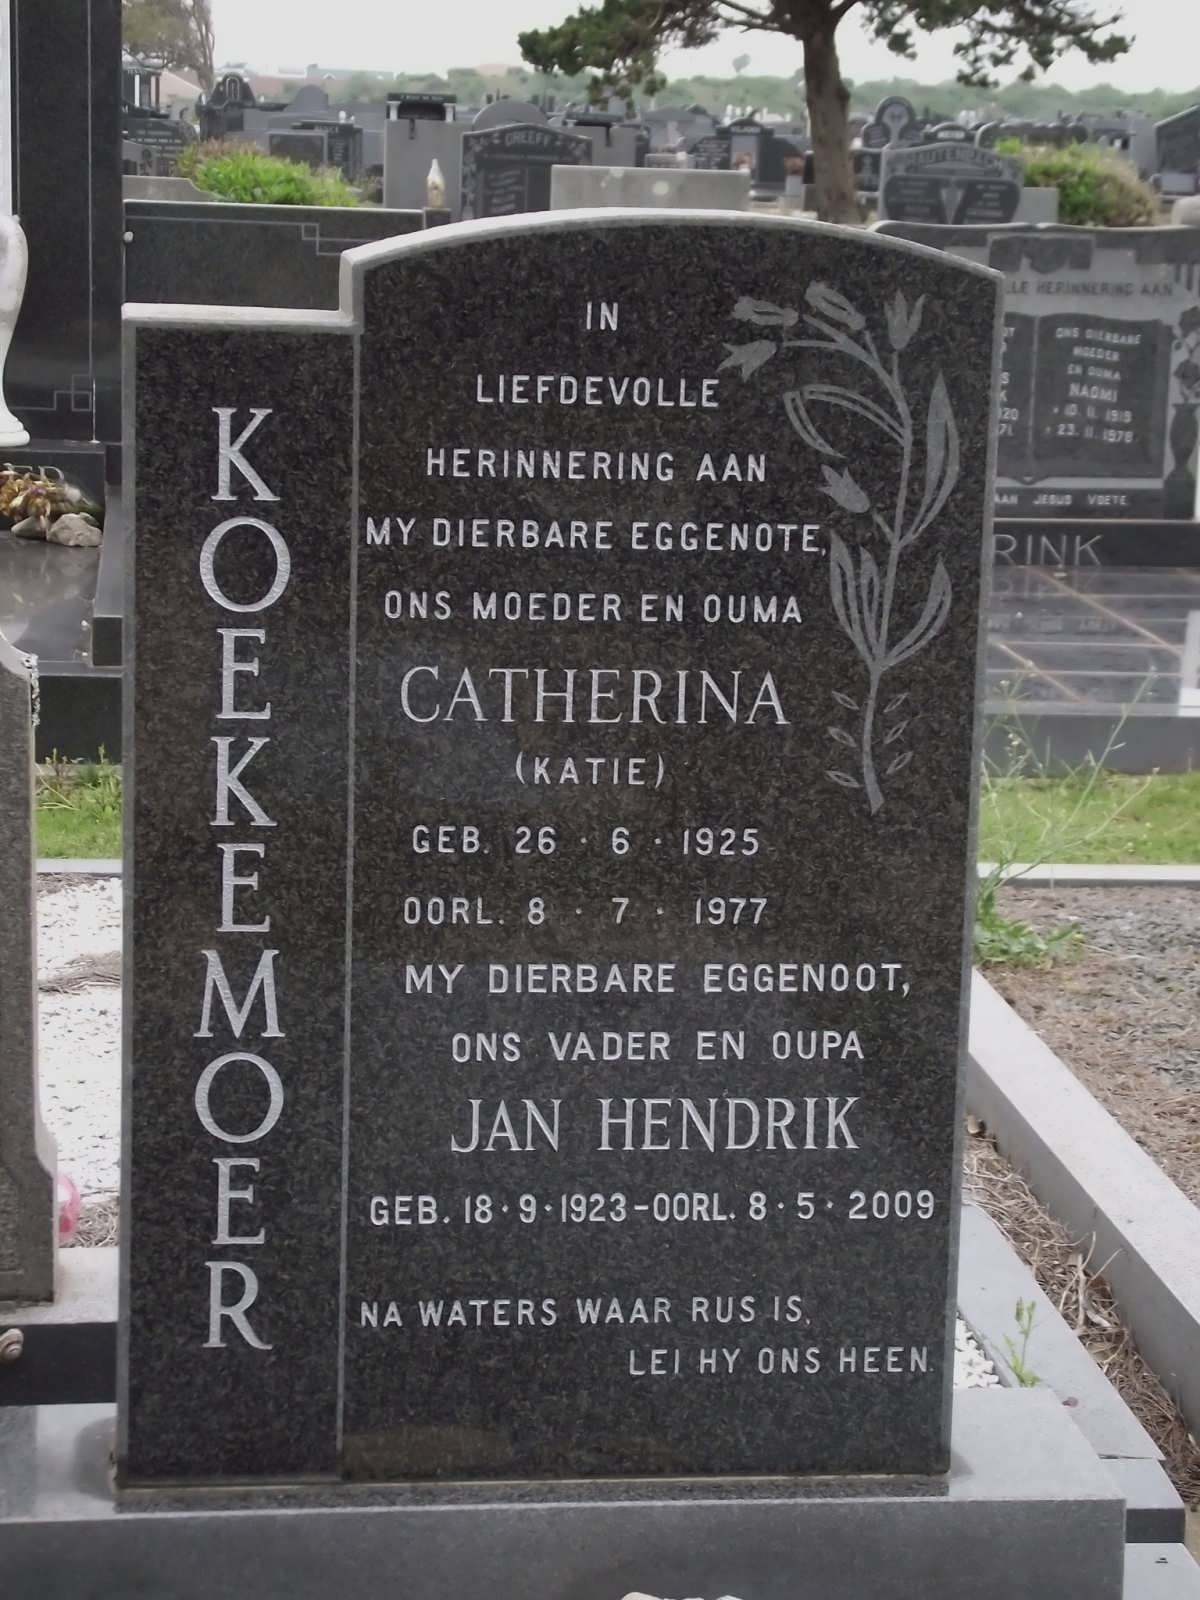 KOEKEMOER Jan Hendrik 1923-2009 & Catherina 1925-1977